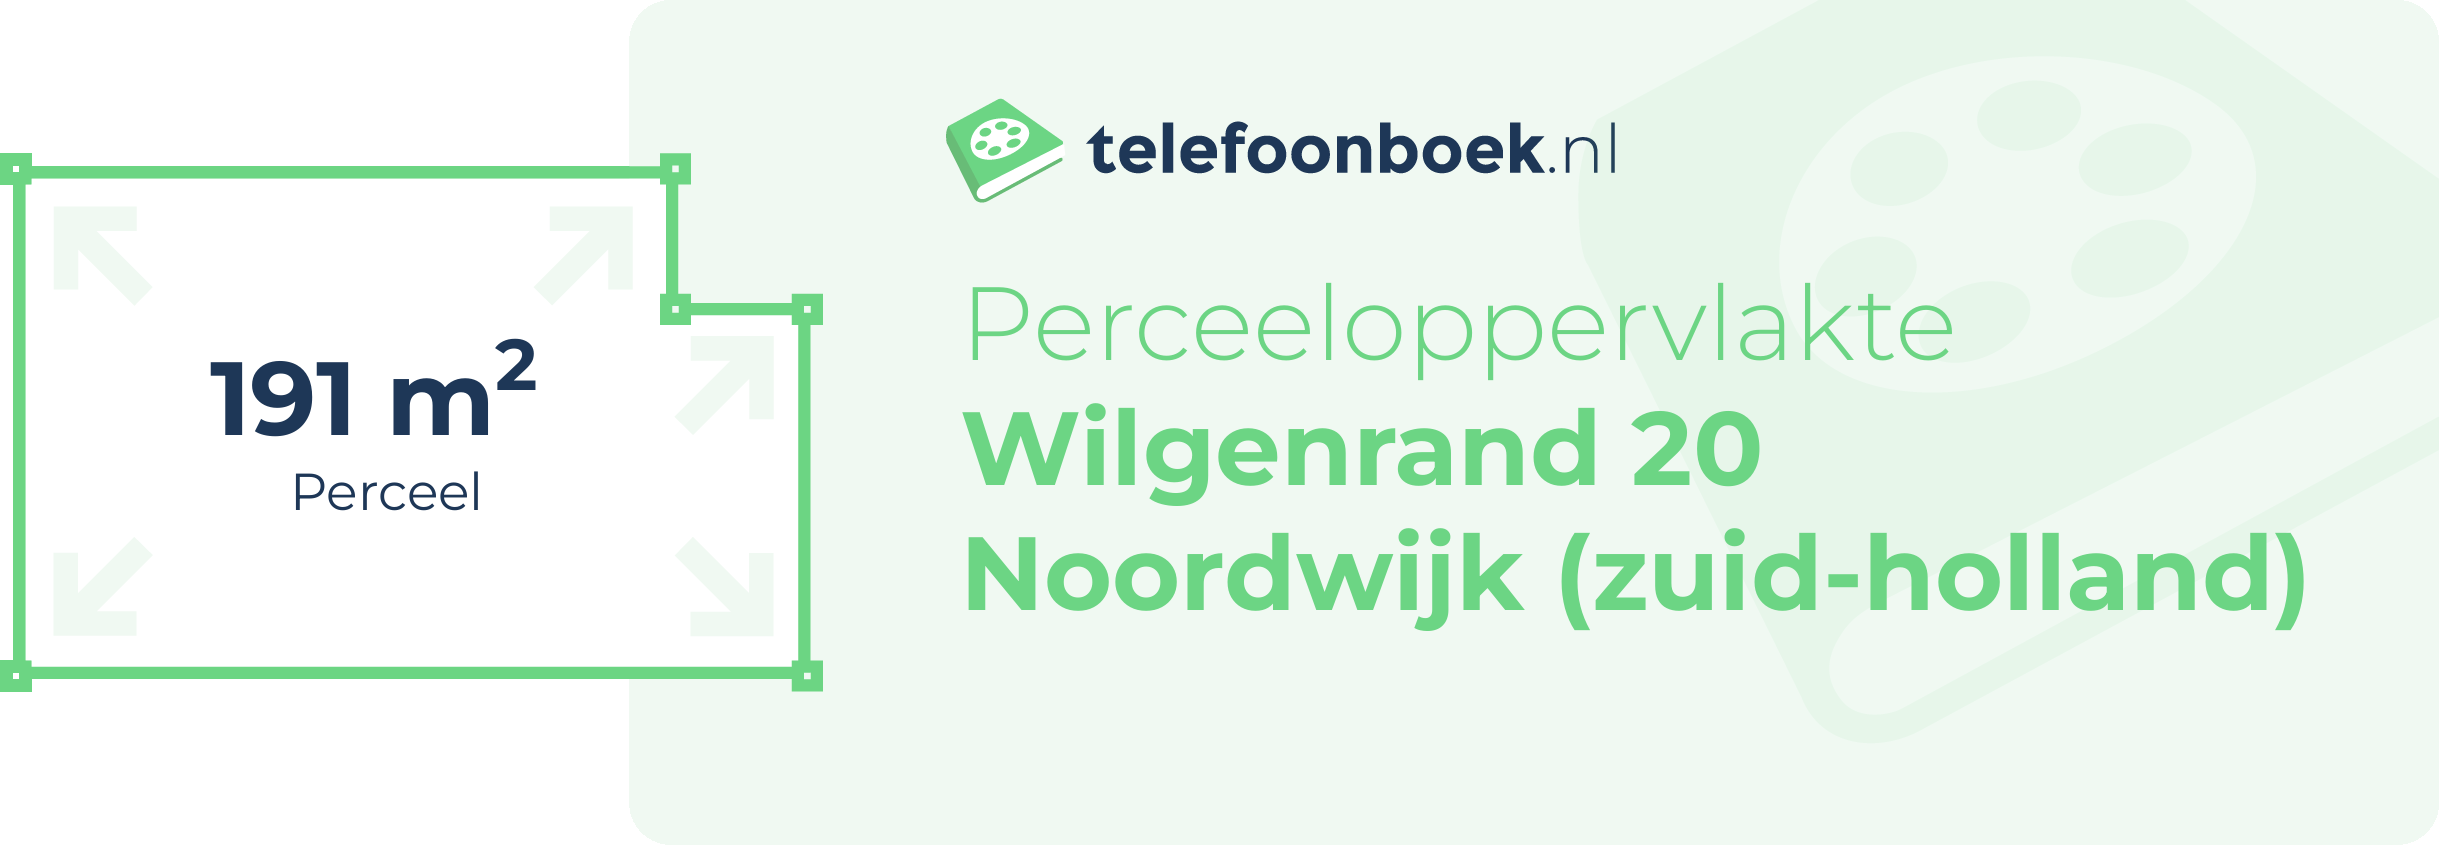 Perceeloppervlakte Wilgenrand 20 Noordwijk (Zuid-Holland)